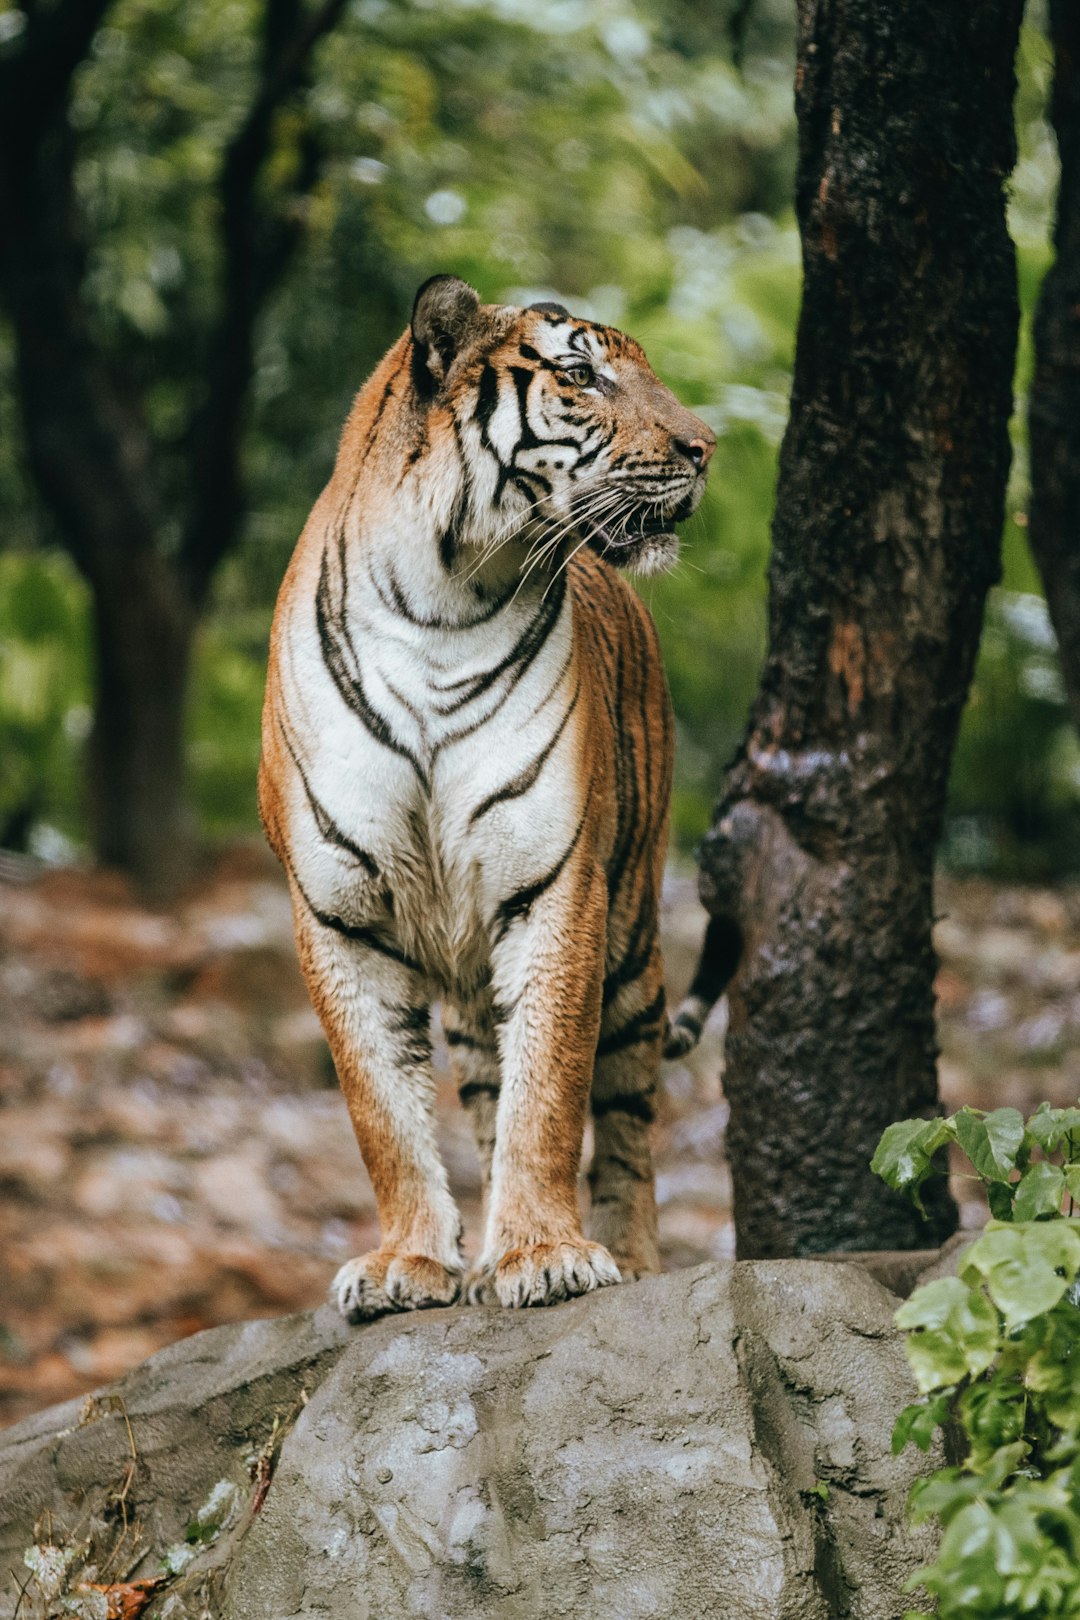 tiger walking on brown soil